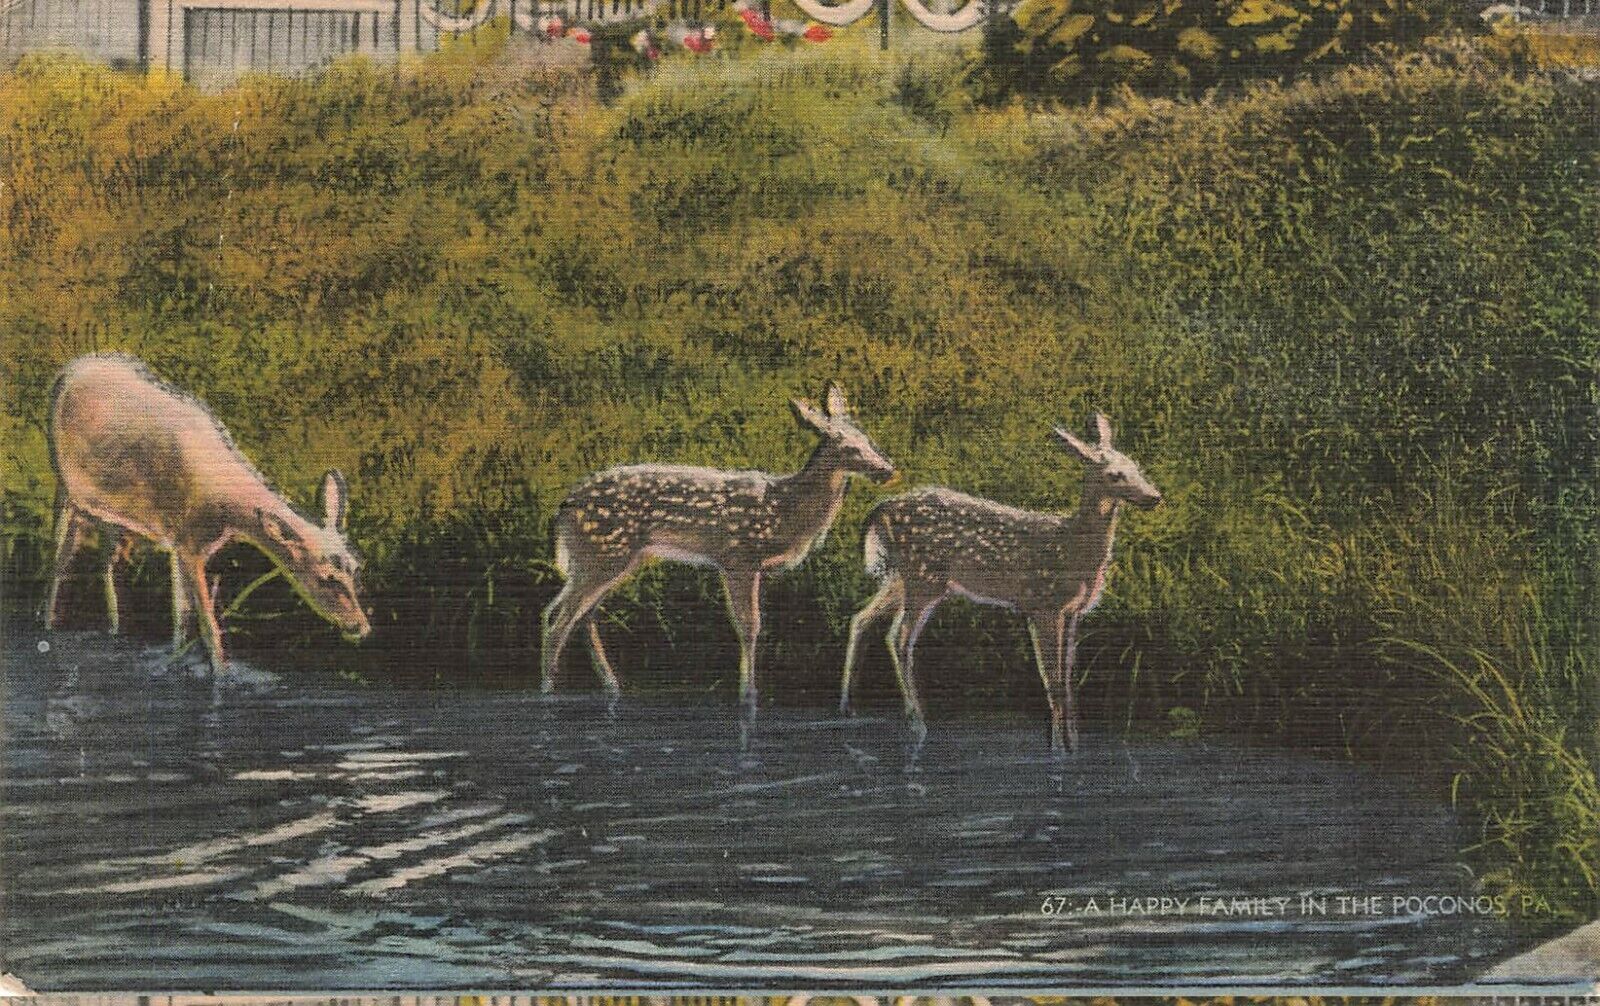 Animals Deer A Happy Family In The Poconos Pennsylvania Postcard | eBay